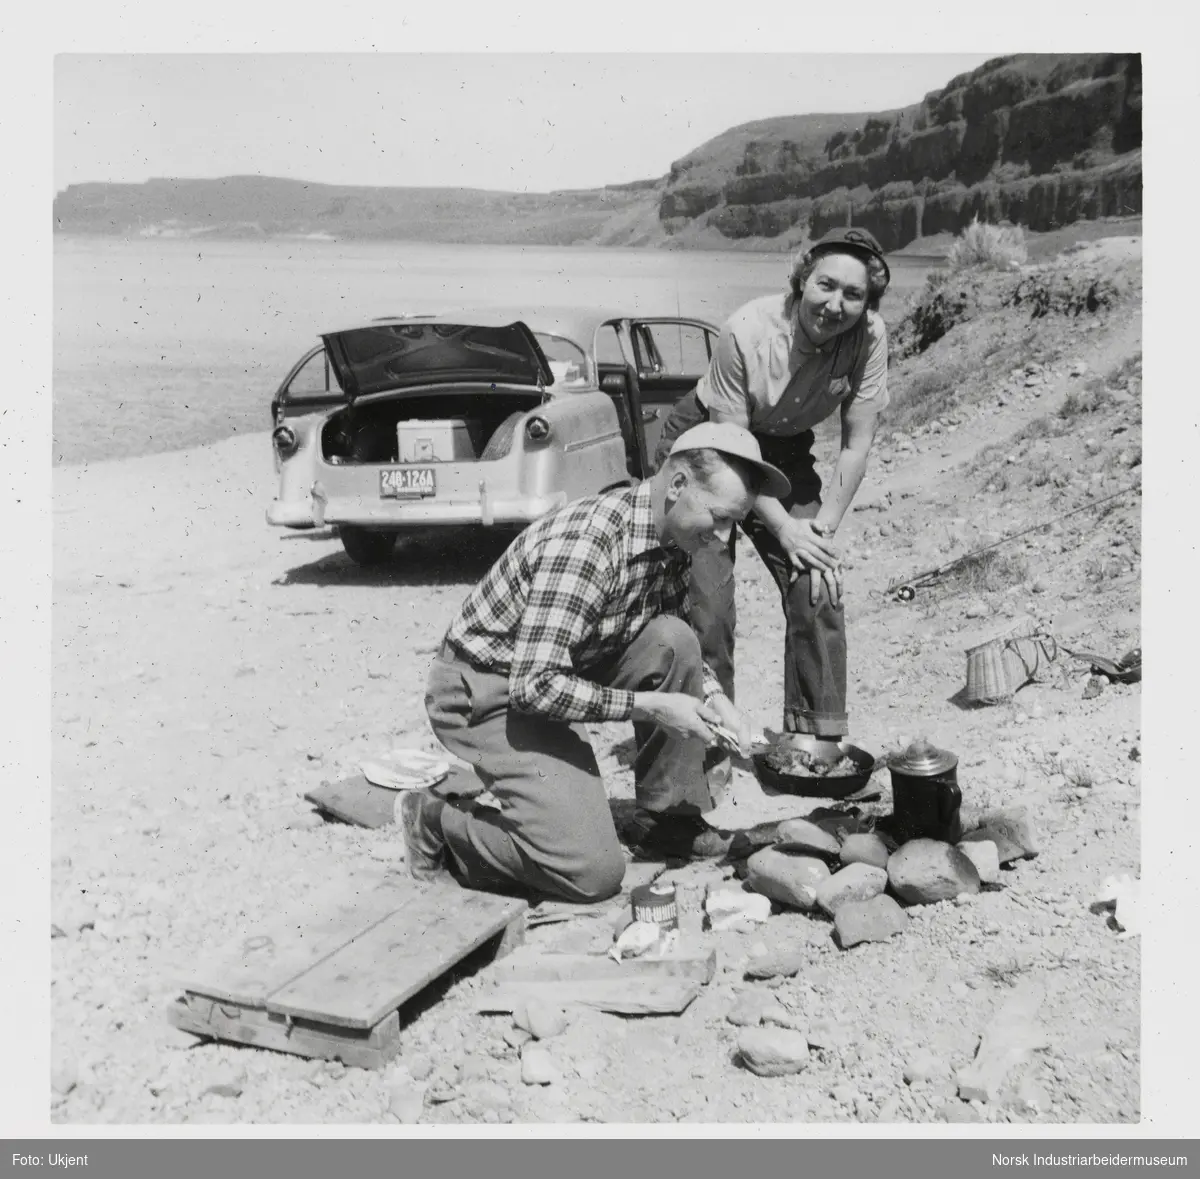 Mann og kvinne lager mat over bål på strand. I bakgrunnen er bil med åpne dører parkert på stranden